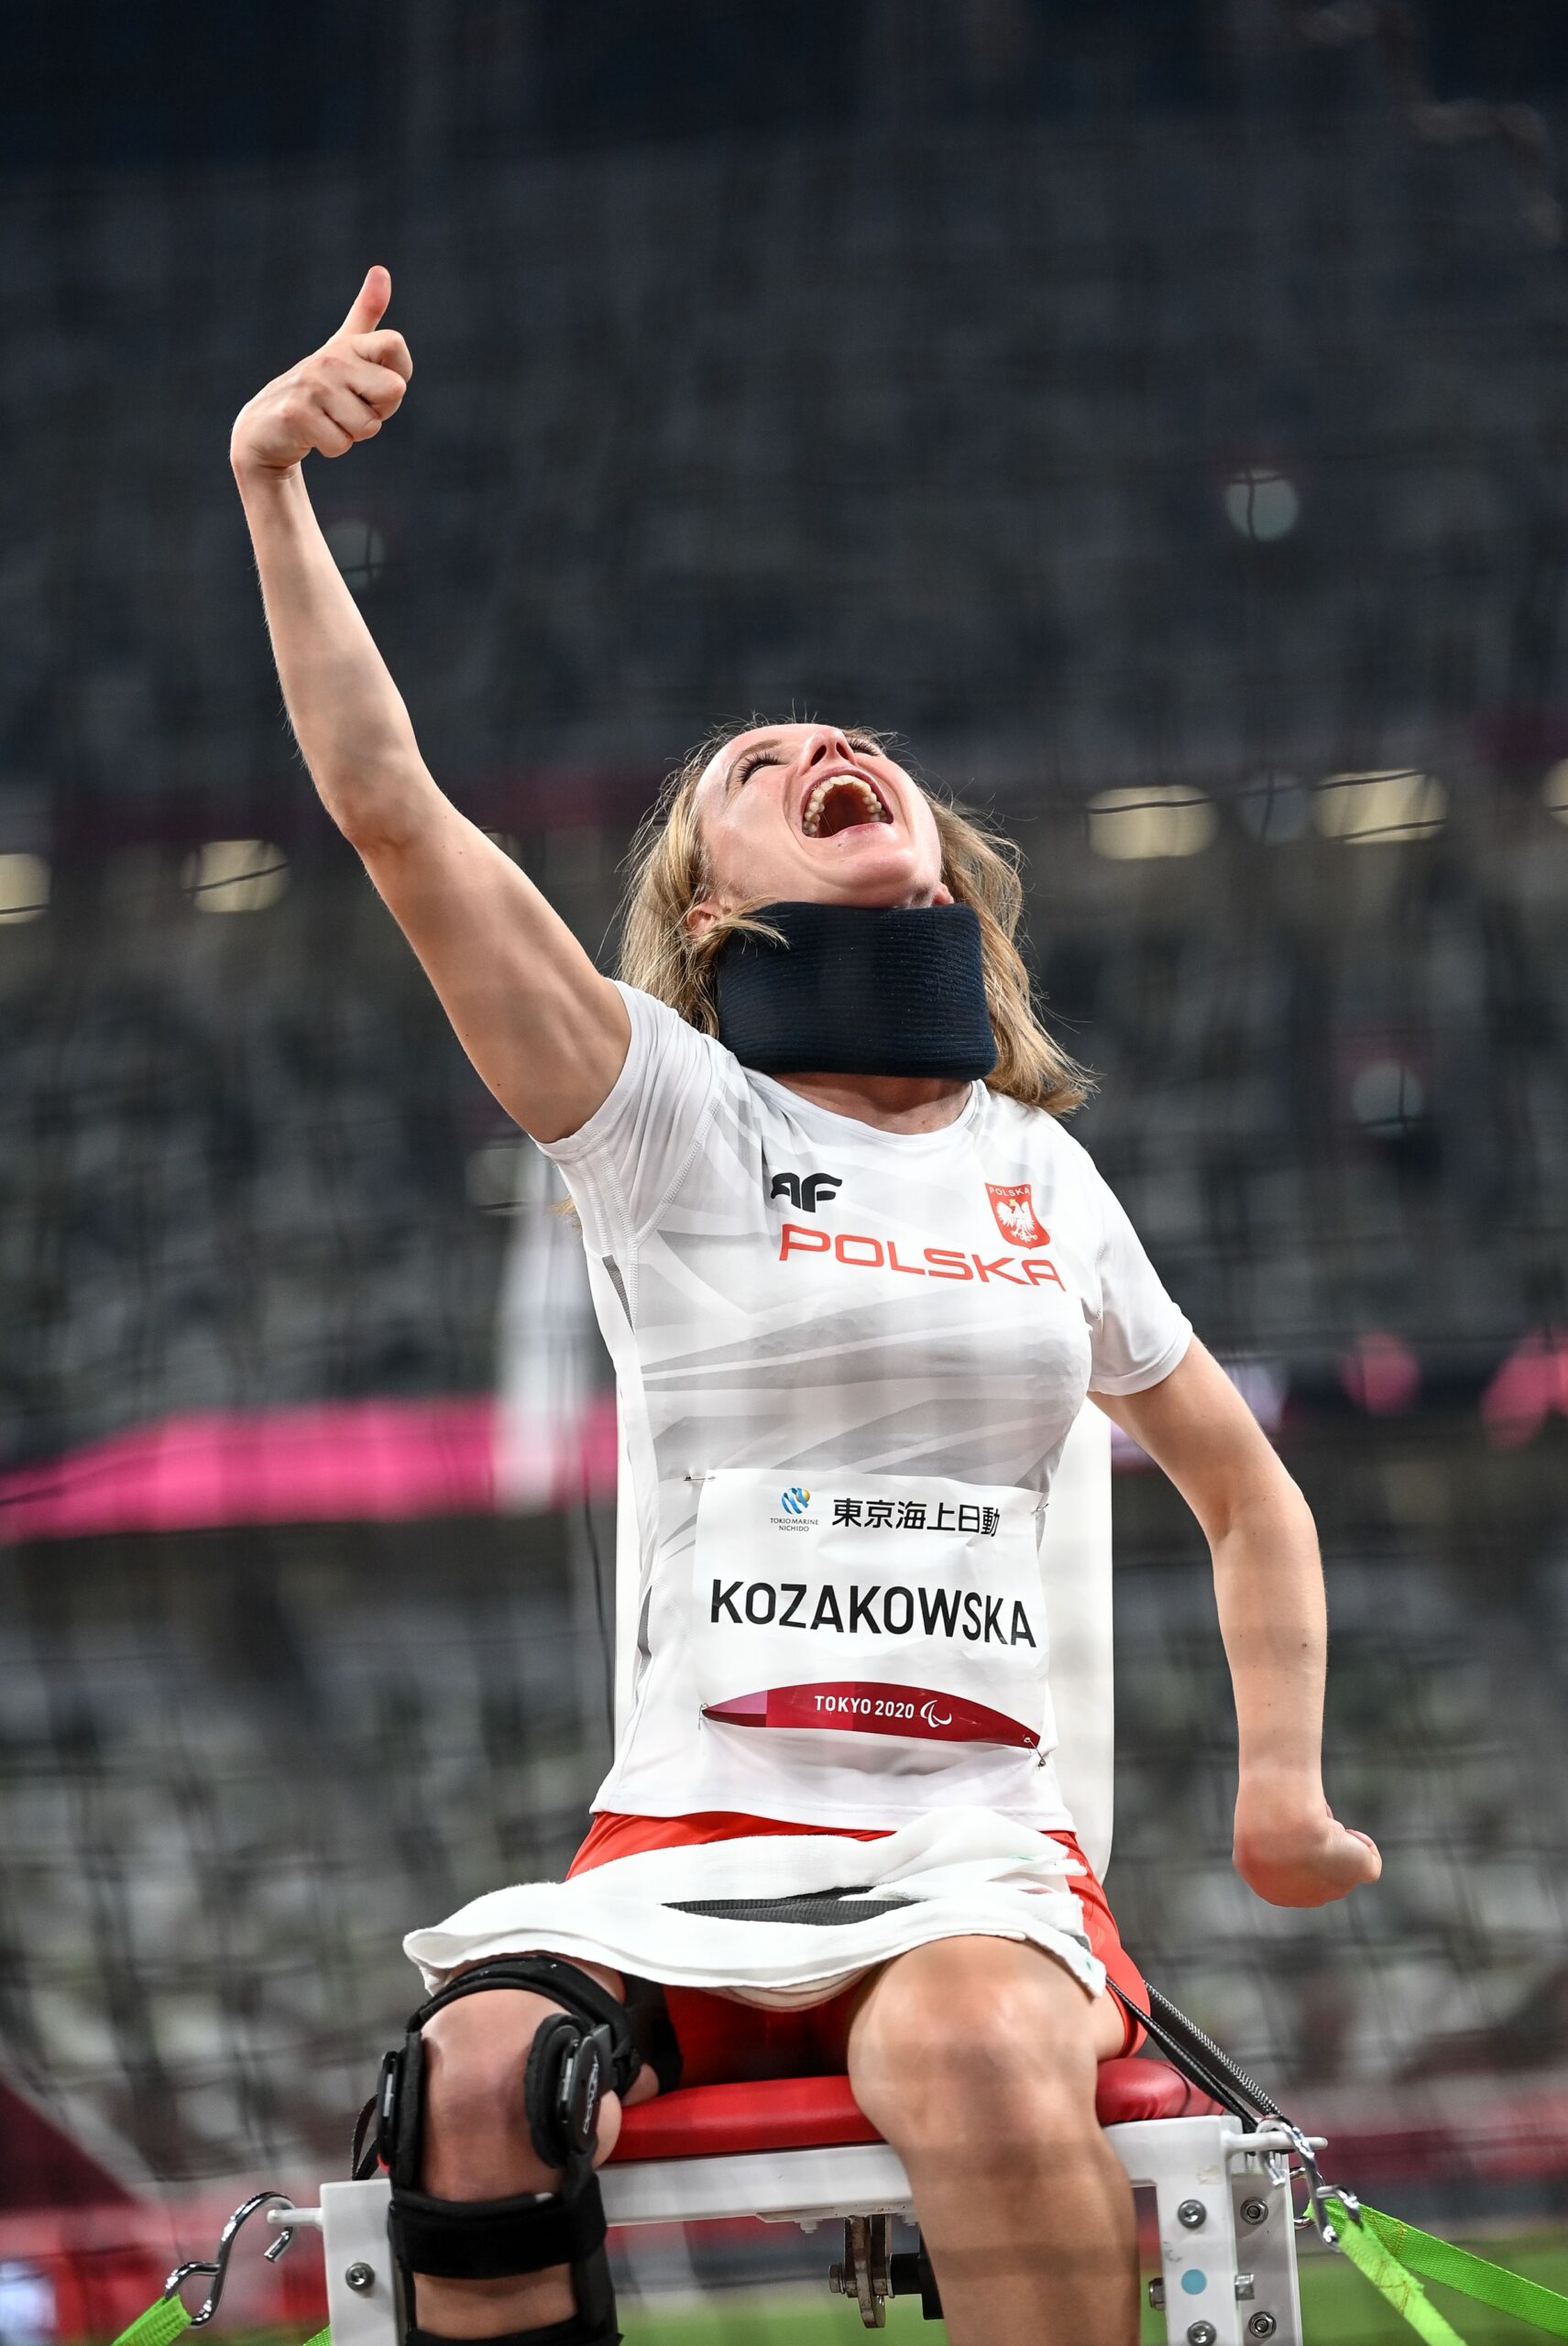 Na zdjęciu znajduje się uśmiechnięta Róża Kozakowska z uniesioną ręką, na stadionie sportowym.